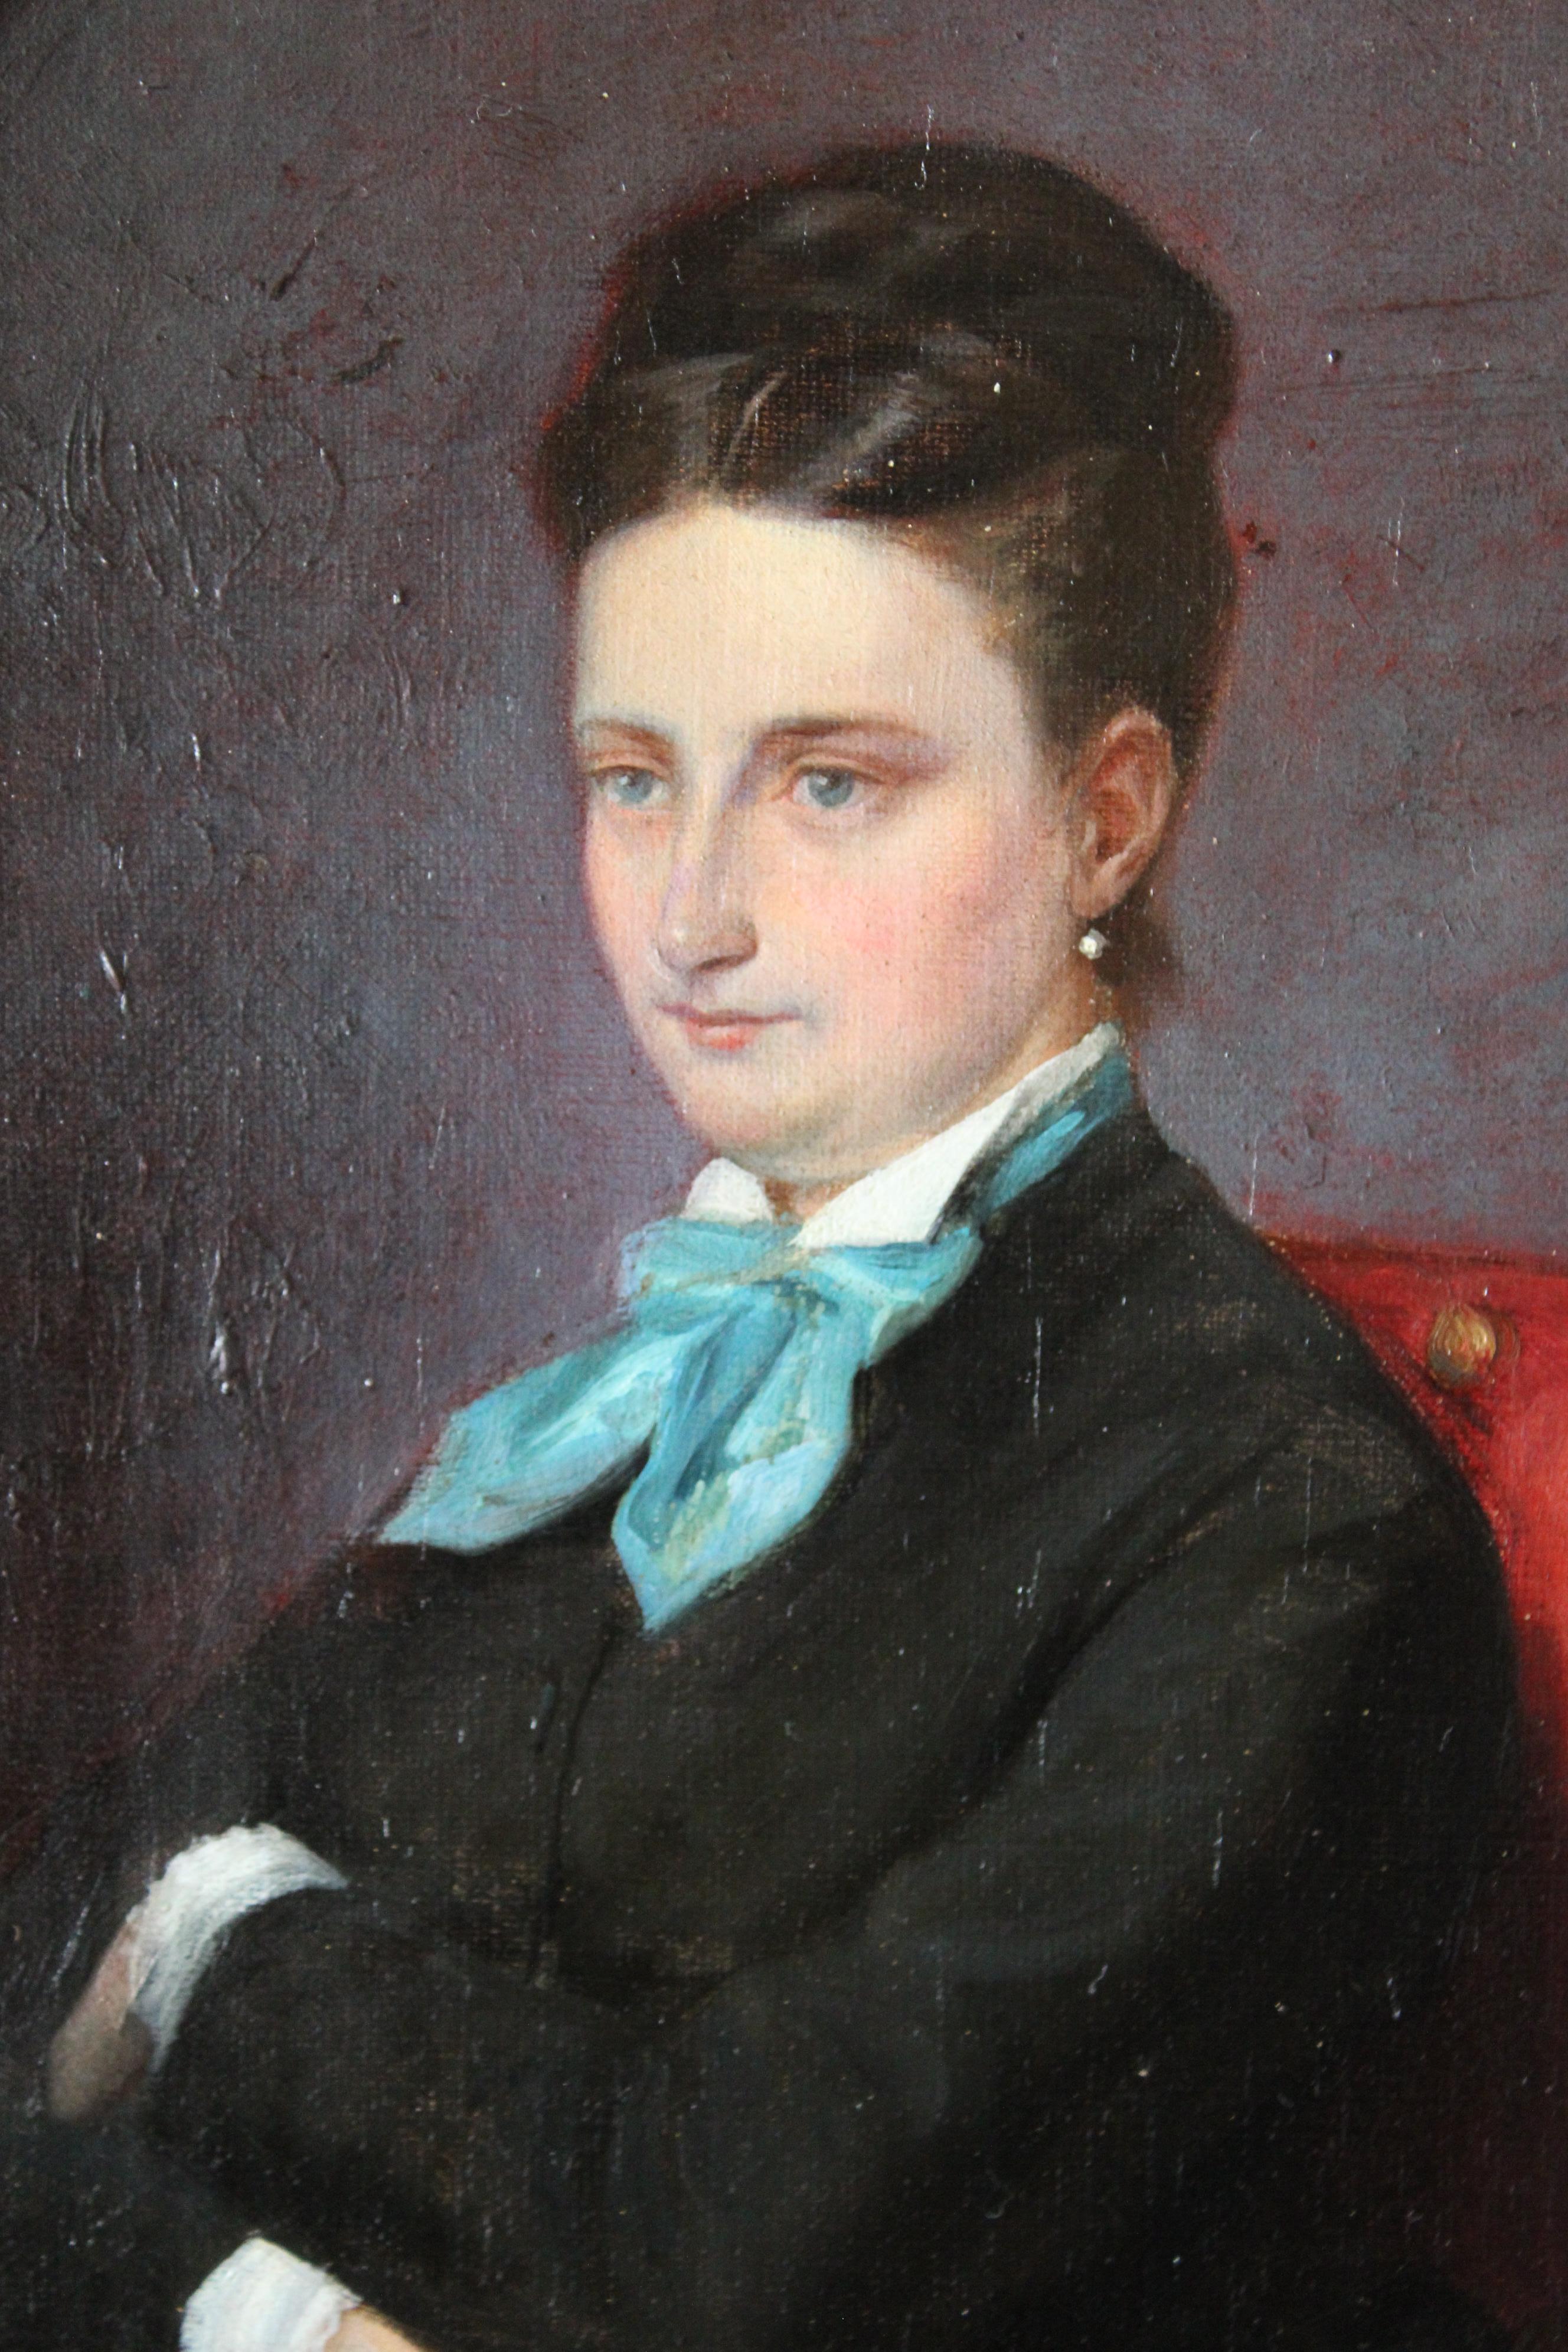 Portrait of a woman, French Antique portrait of a woman, framed portrait - Brown Portrait Painting by Paul Louis Léger Chardin